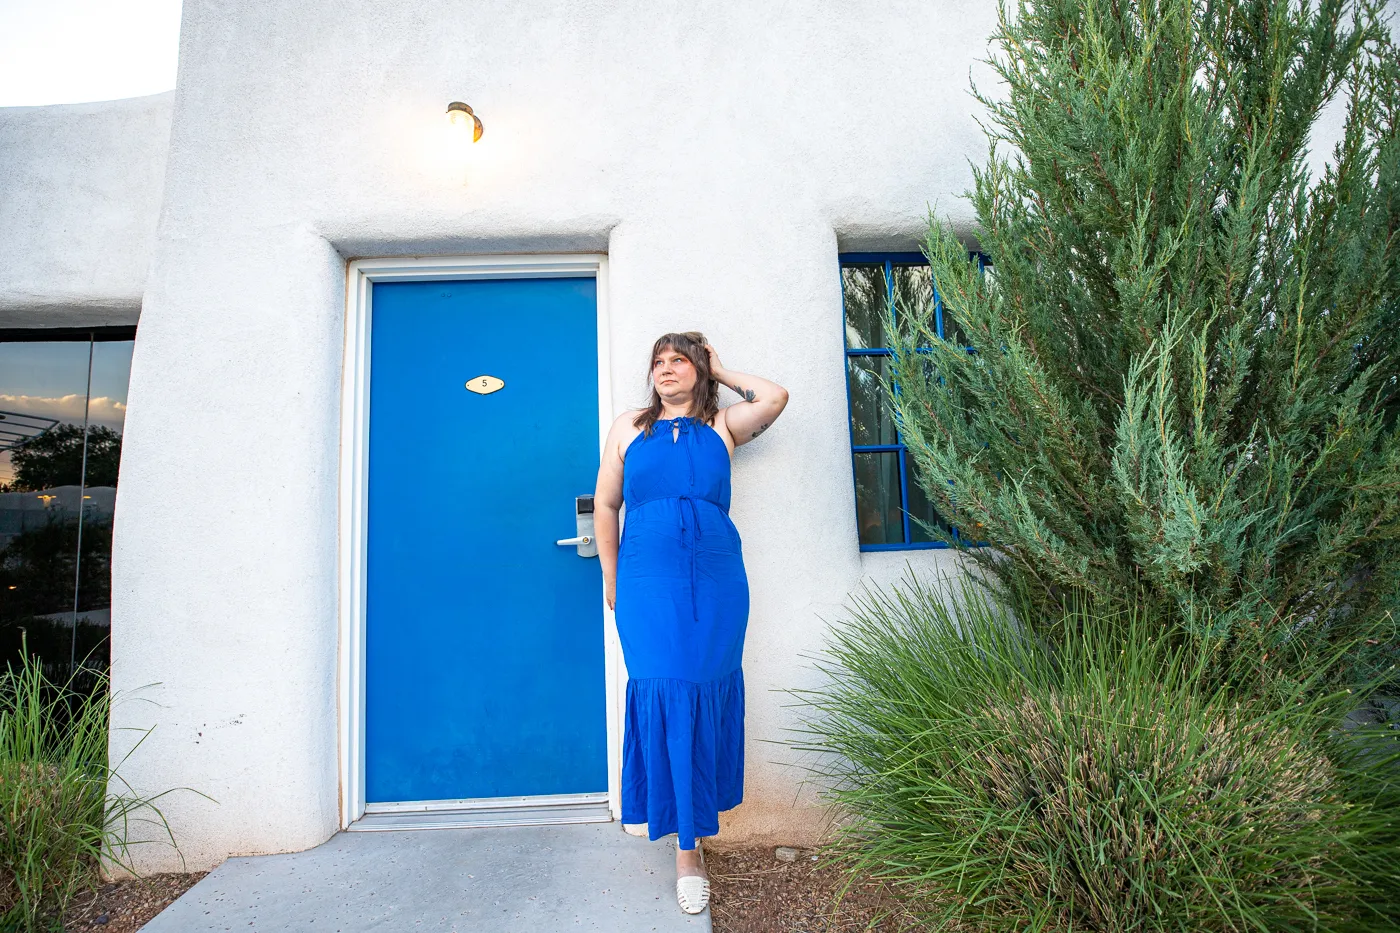 Blue doors at El Vado Motel in Albuquerque, New Mexico (Route 66 Motel)